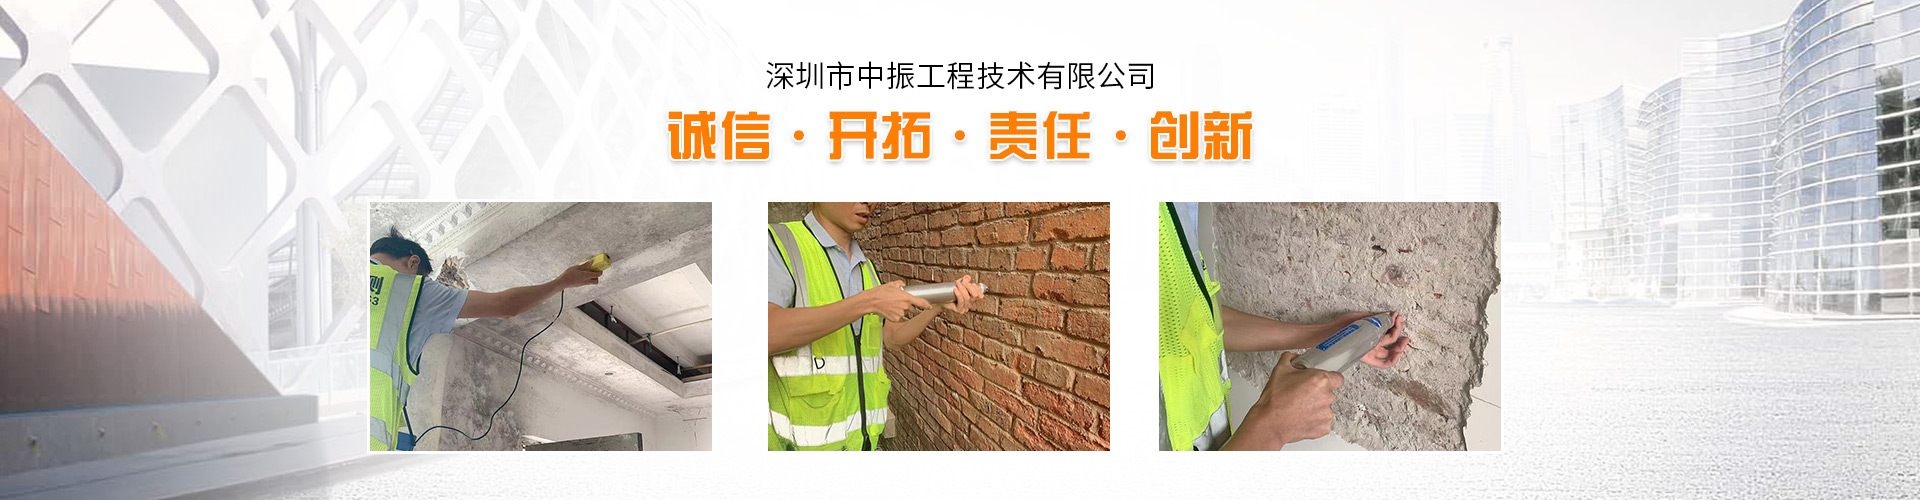 惠州市房屋安全检测鉴定*